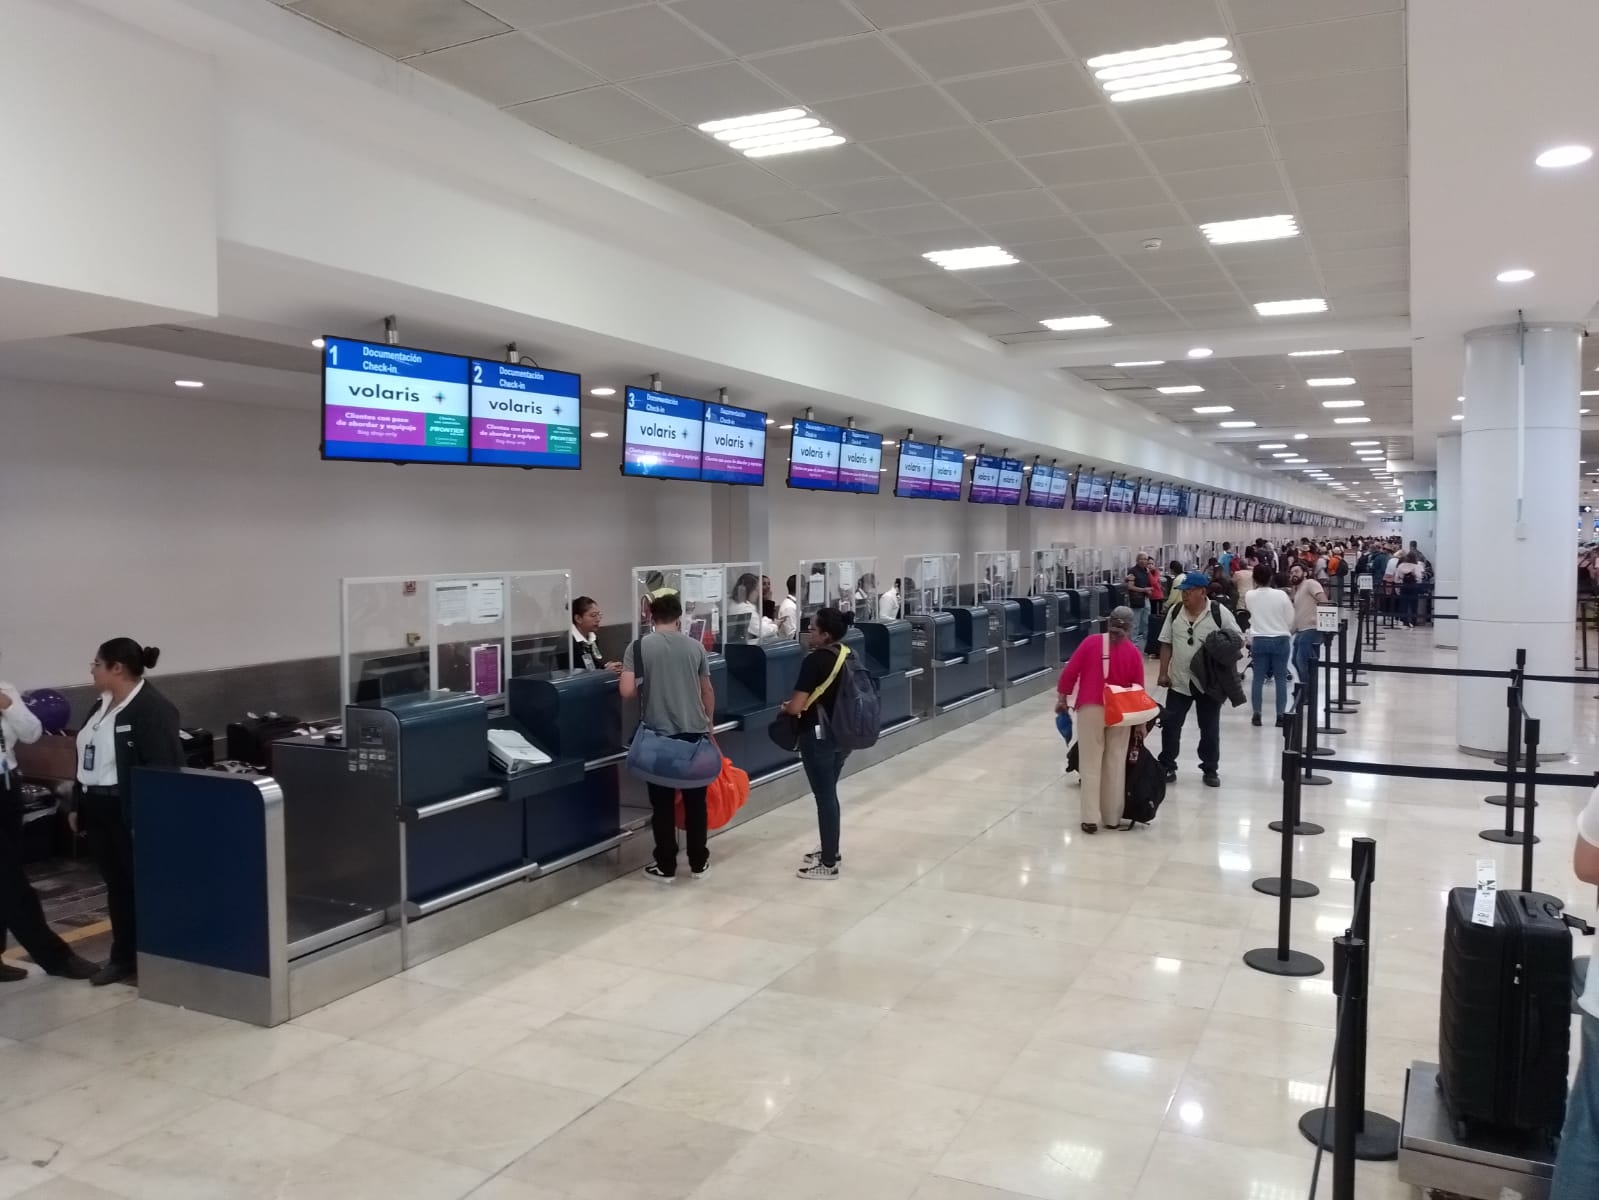 Disminuyen las operaciones aéreas en el aeropuerto de Cancún: EN VIVO